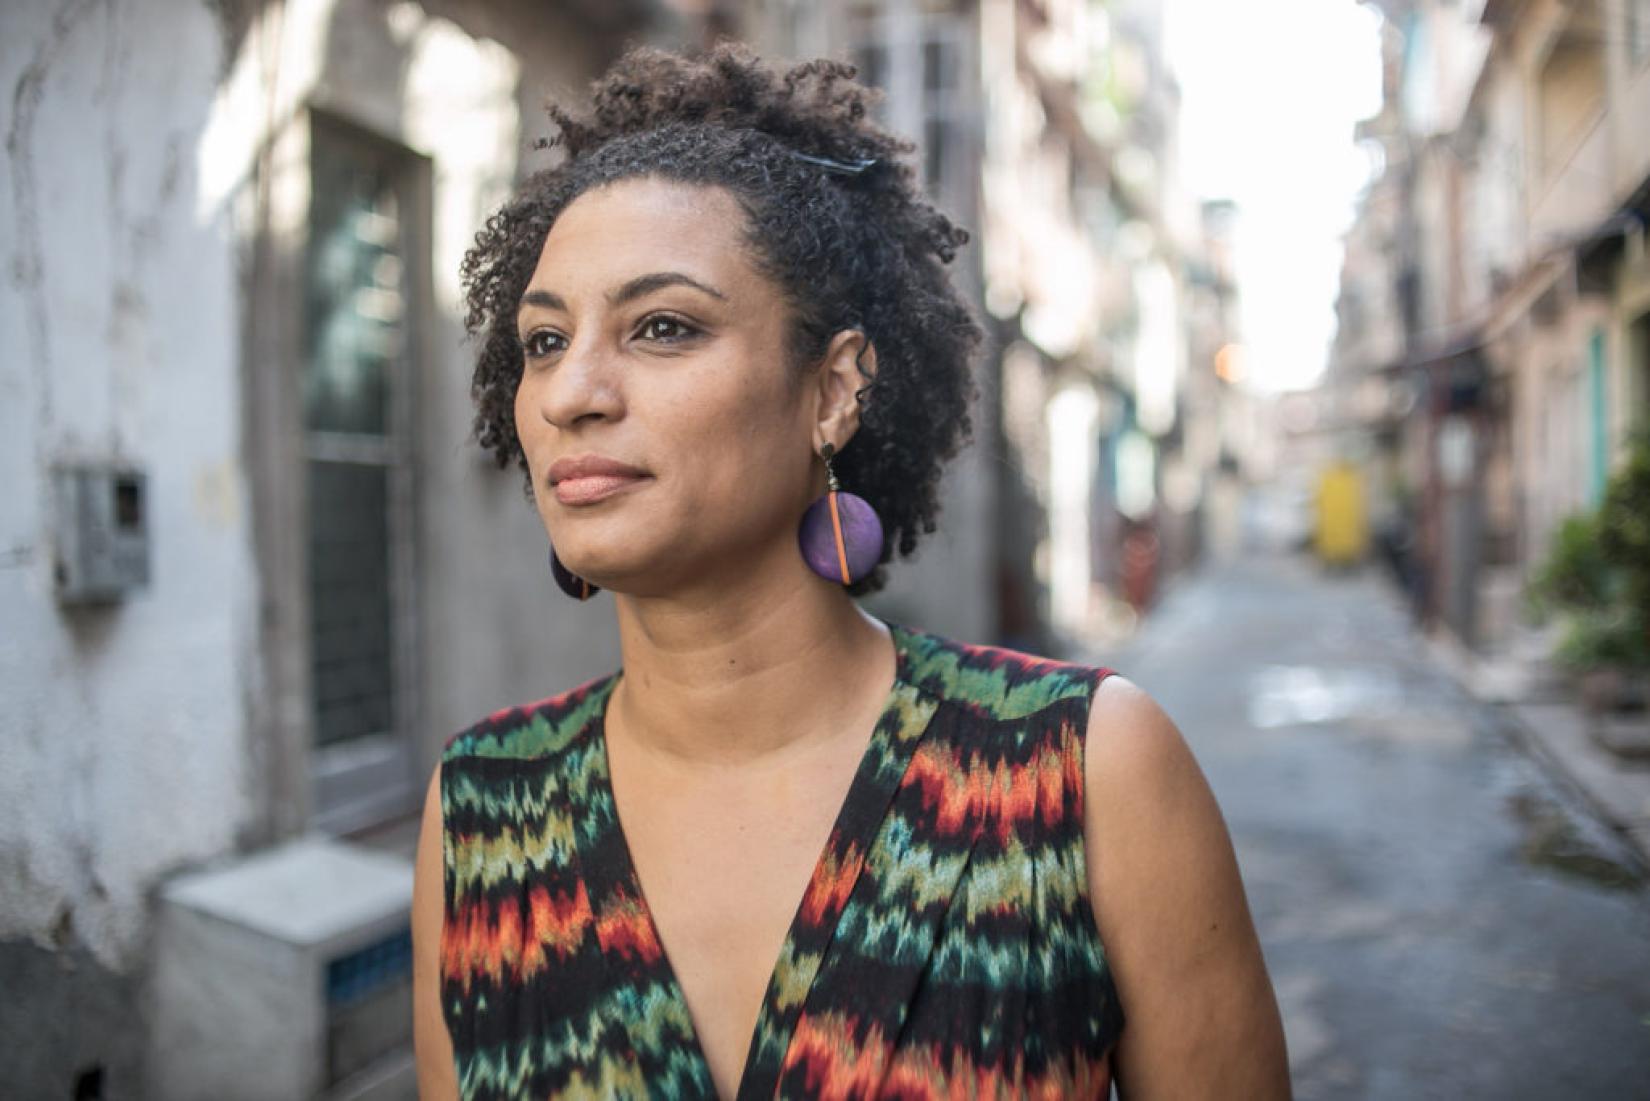 Marielle Franco, vereadora do Rio de Janeiro e defensora dos direitos humanos. Foto: Mídia Ninja